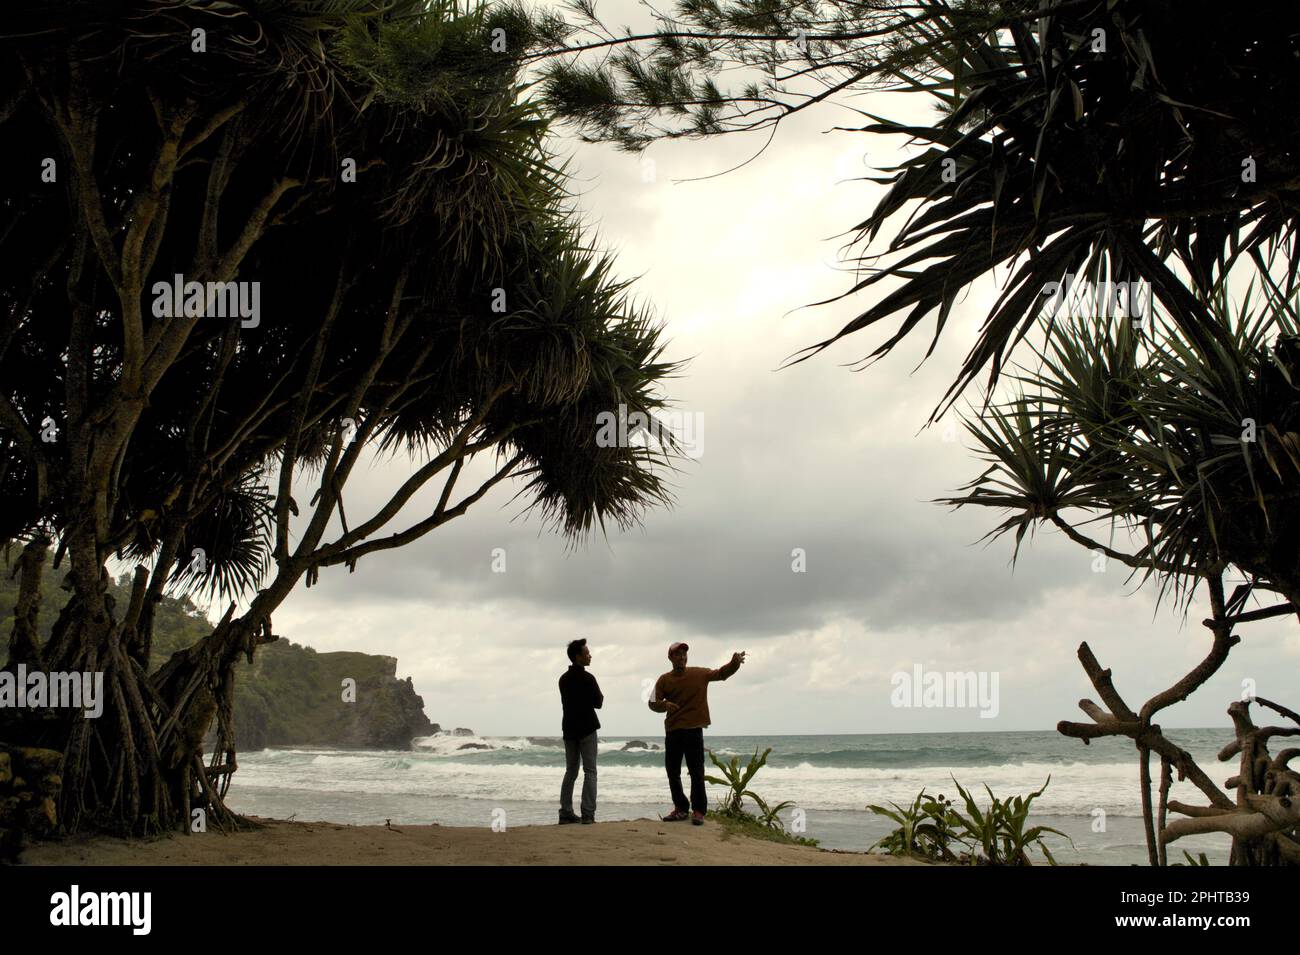 Les grimpeurs ont une conversation alors qu'ils se tiennent sur une plage de sable à leur arrivée, dans un fond de colline de calcaire et de l'océan Indien dans une zone côtière appelée Siung Beach, qui est administrativement situé à Duwet, Purwodadi, Tepus, Gunungkidul, Yogyakarta, Indonésie. La plage est l'une des destinations de loisirs côtières populaires face à l'océan Indien dans la région spéciale de Yogyakarta. Pour les amateurs d'escalade, Siung Beach offre plus de 200 parcours sportifs déjà établis sur le front de ses collines calcaires. Banque D'Images